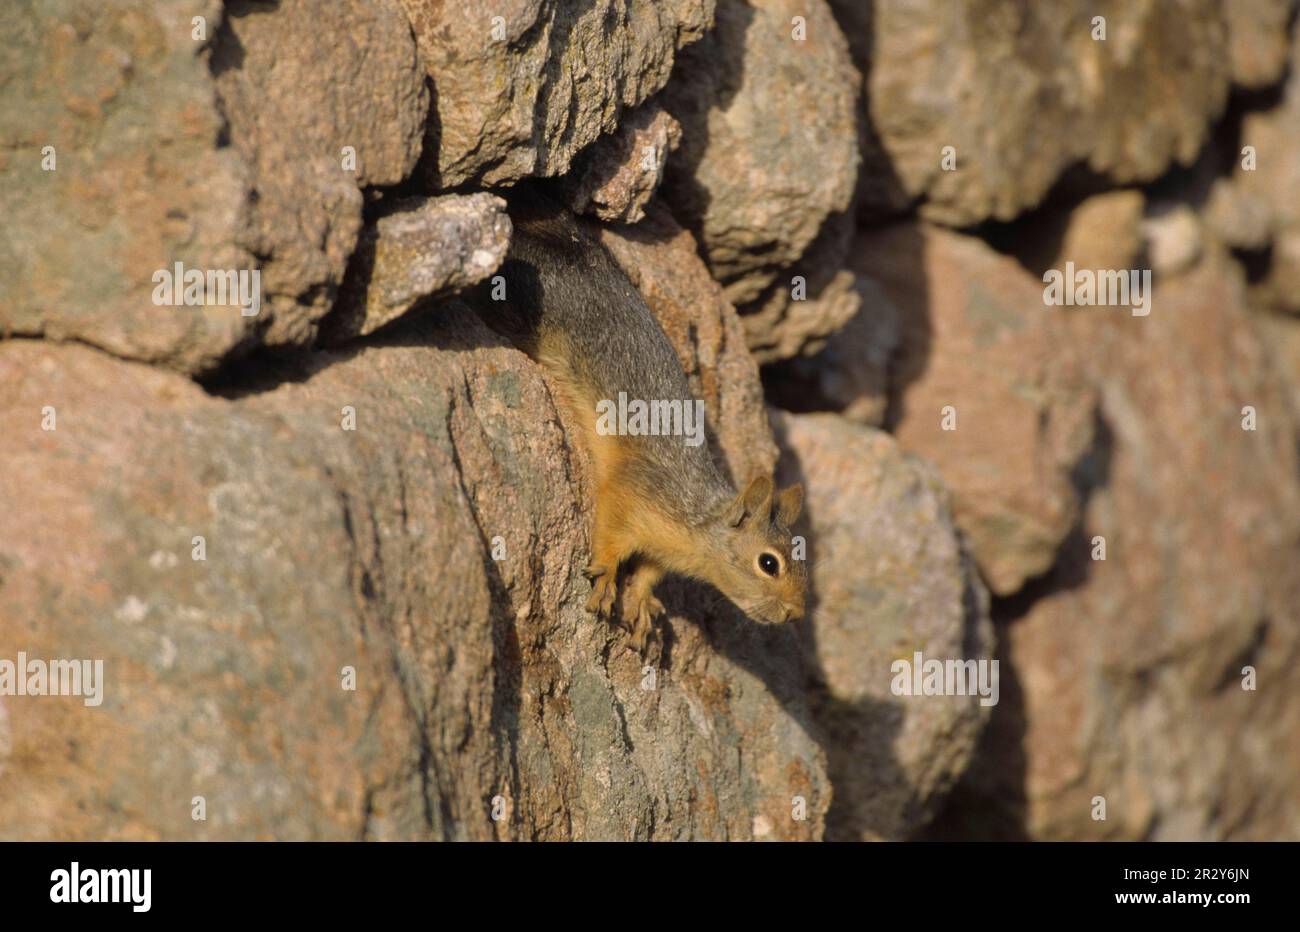 Caucasian squirrel (Sciurus anomalus), Caucasian squirrels, rodents, mammals, animals, Persian squirrel adult, among rocks of stone wall, Lesvos Stock Photo